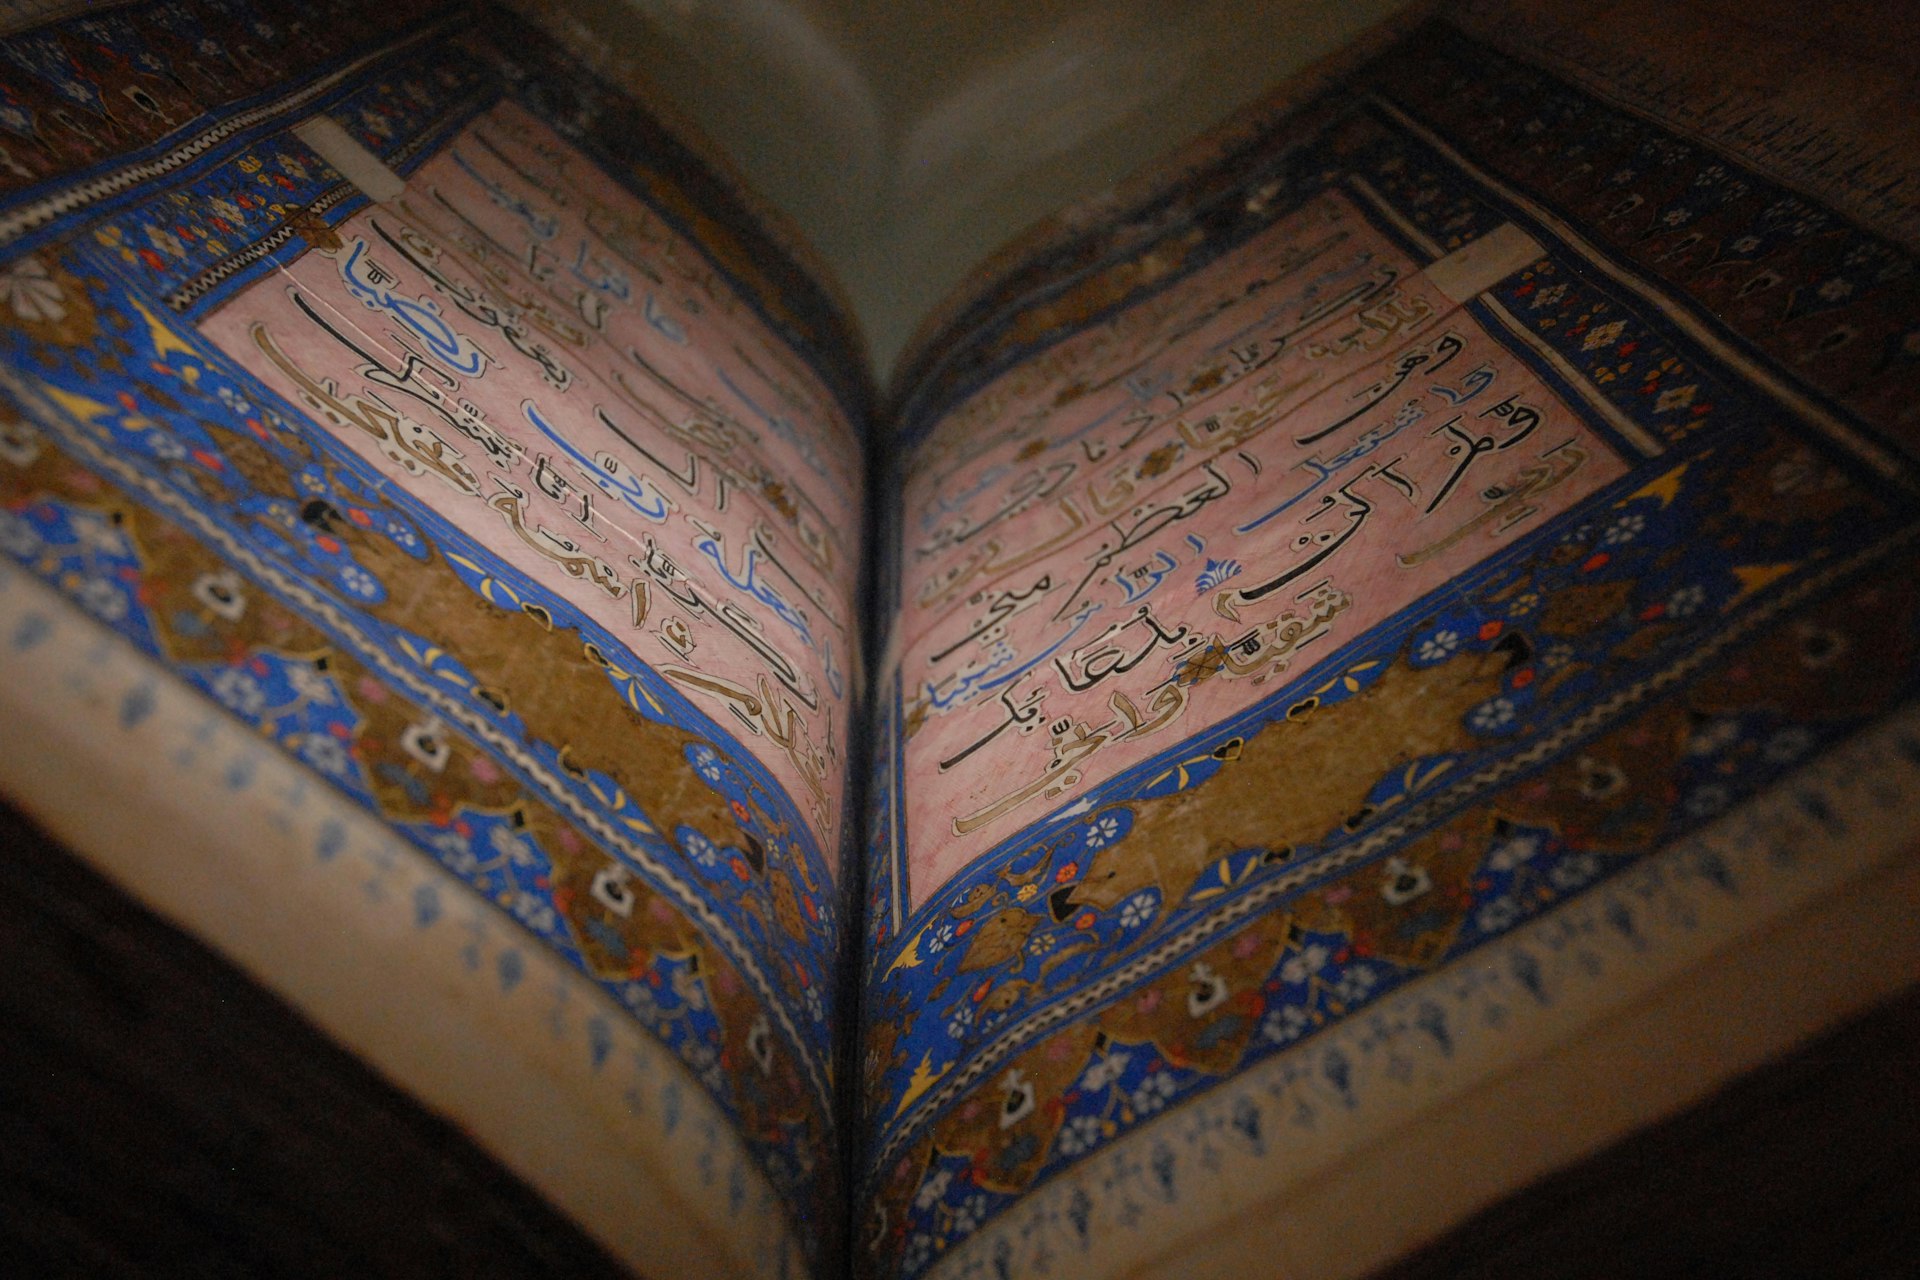 An illuminated copy of the Quran at the Chowmahalla